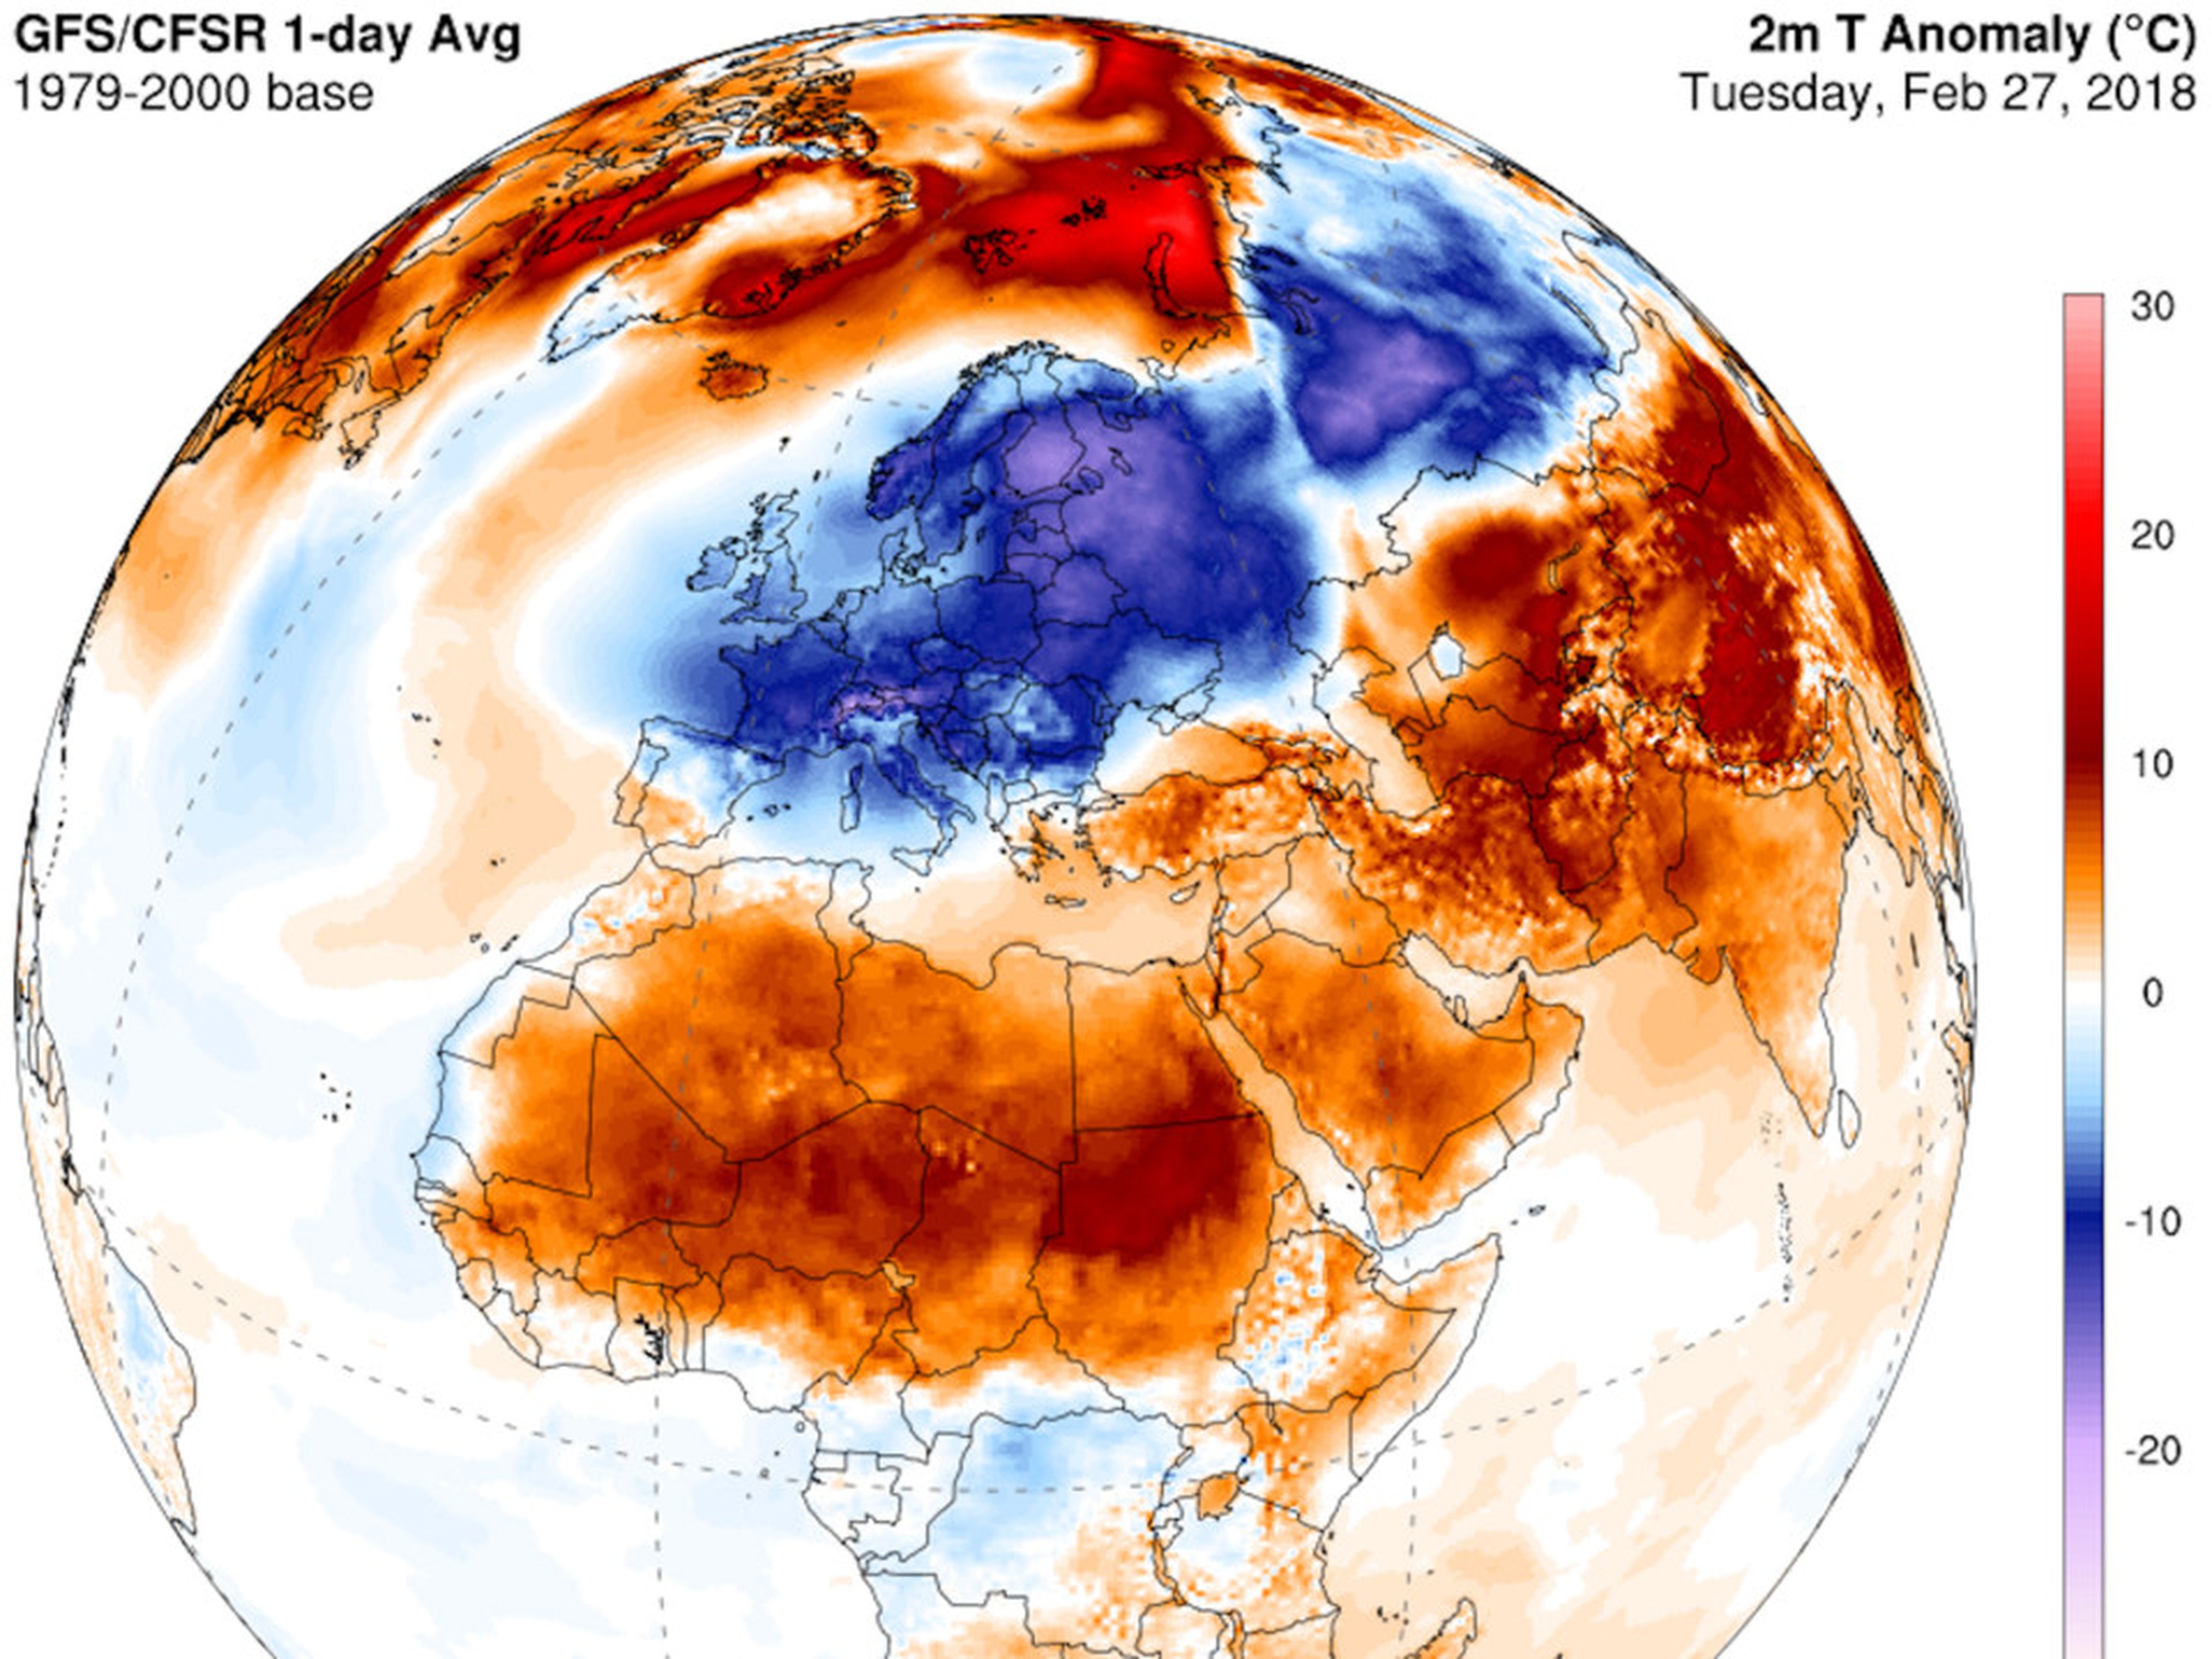 De acuerdo con este mapa, parte de las temperaturas europeas están alcanzando los 20 grados centígrados por debajo de la media, mientras que las regiones árticas se sitúan en torno a los 20 grados centígrados por encima de la media.